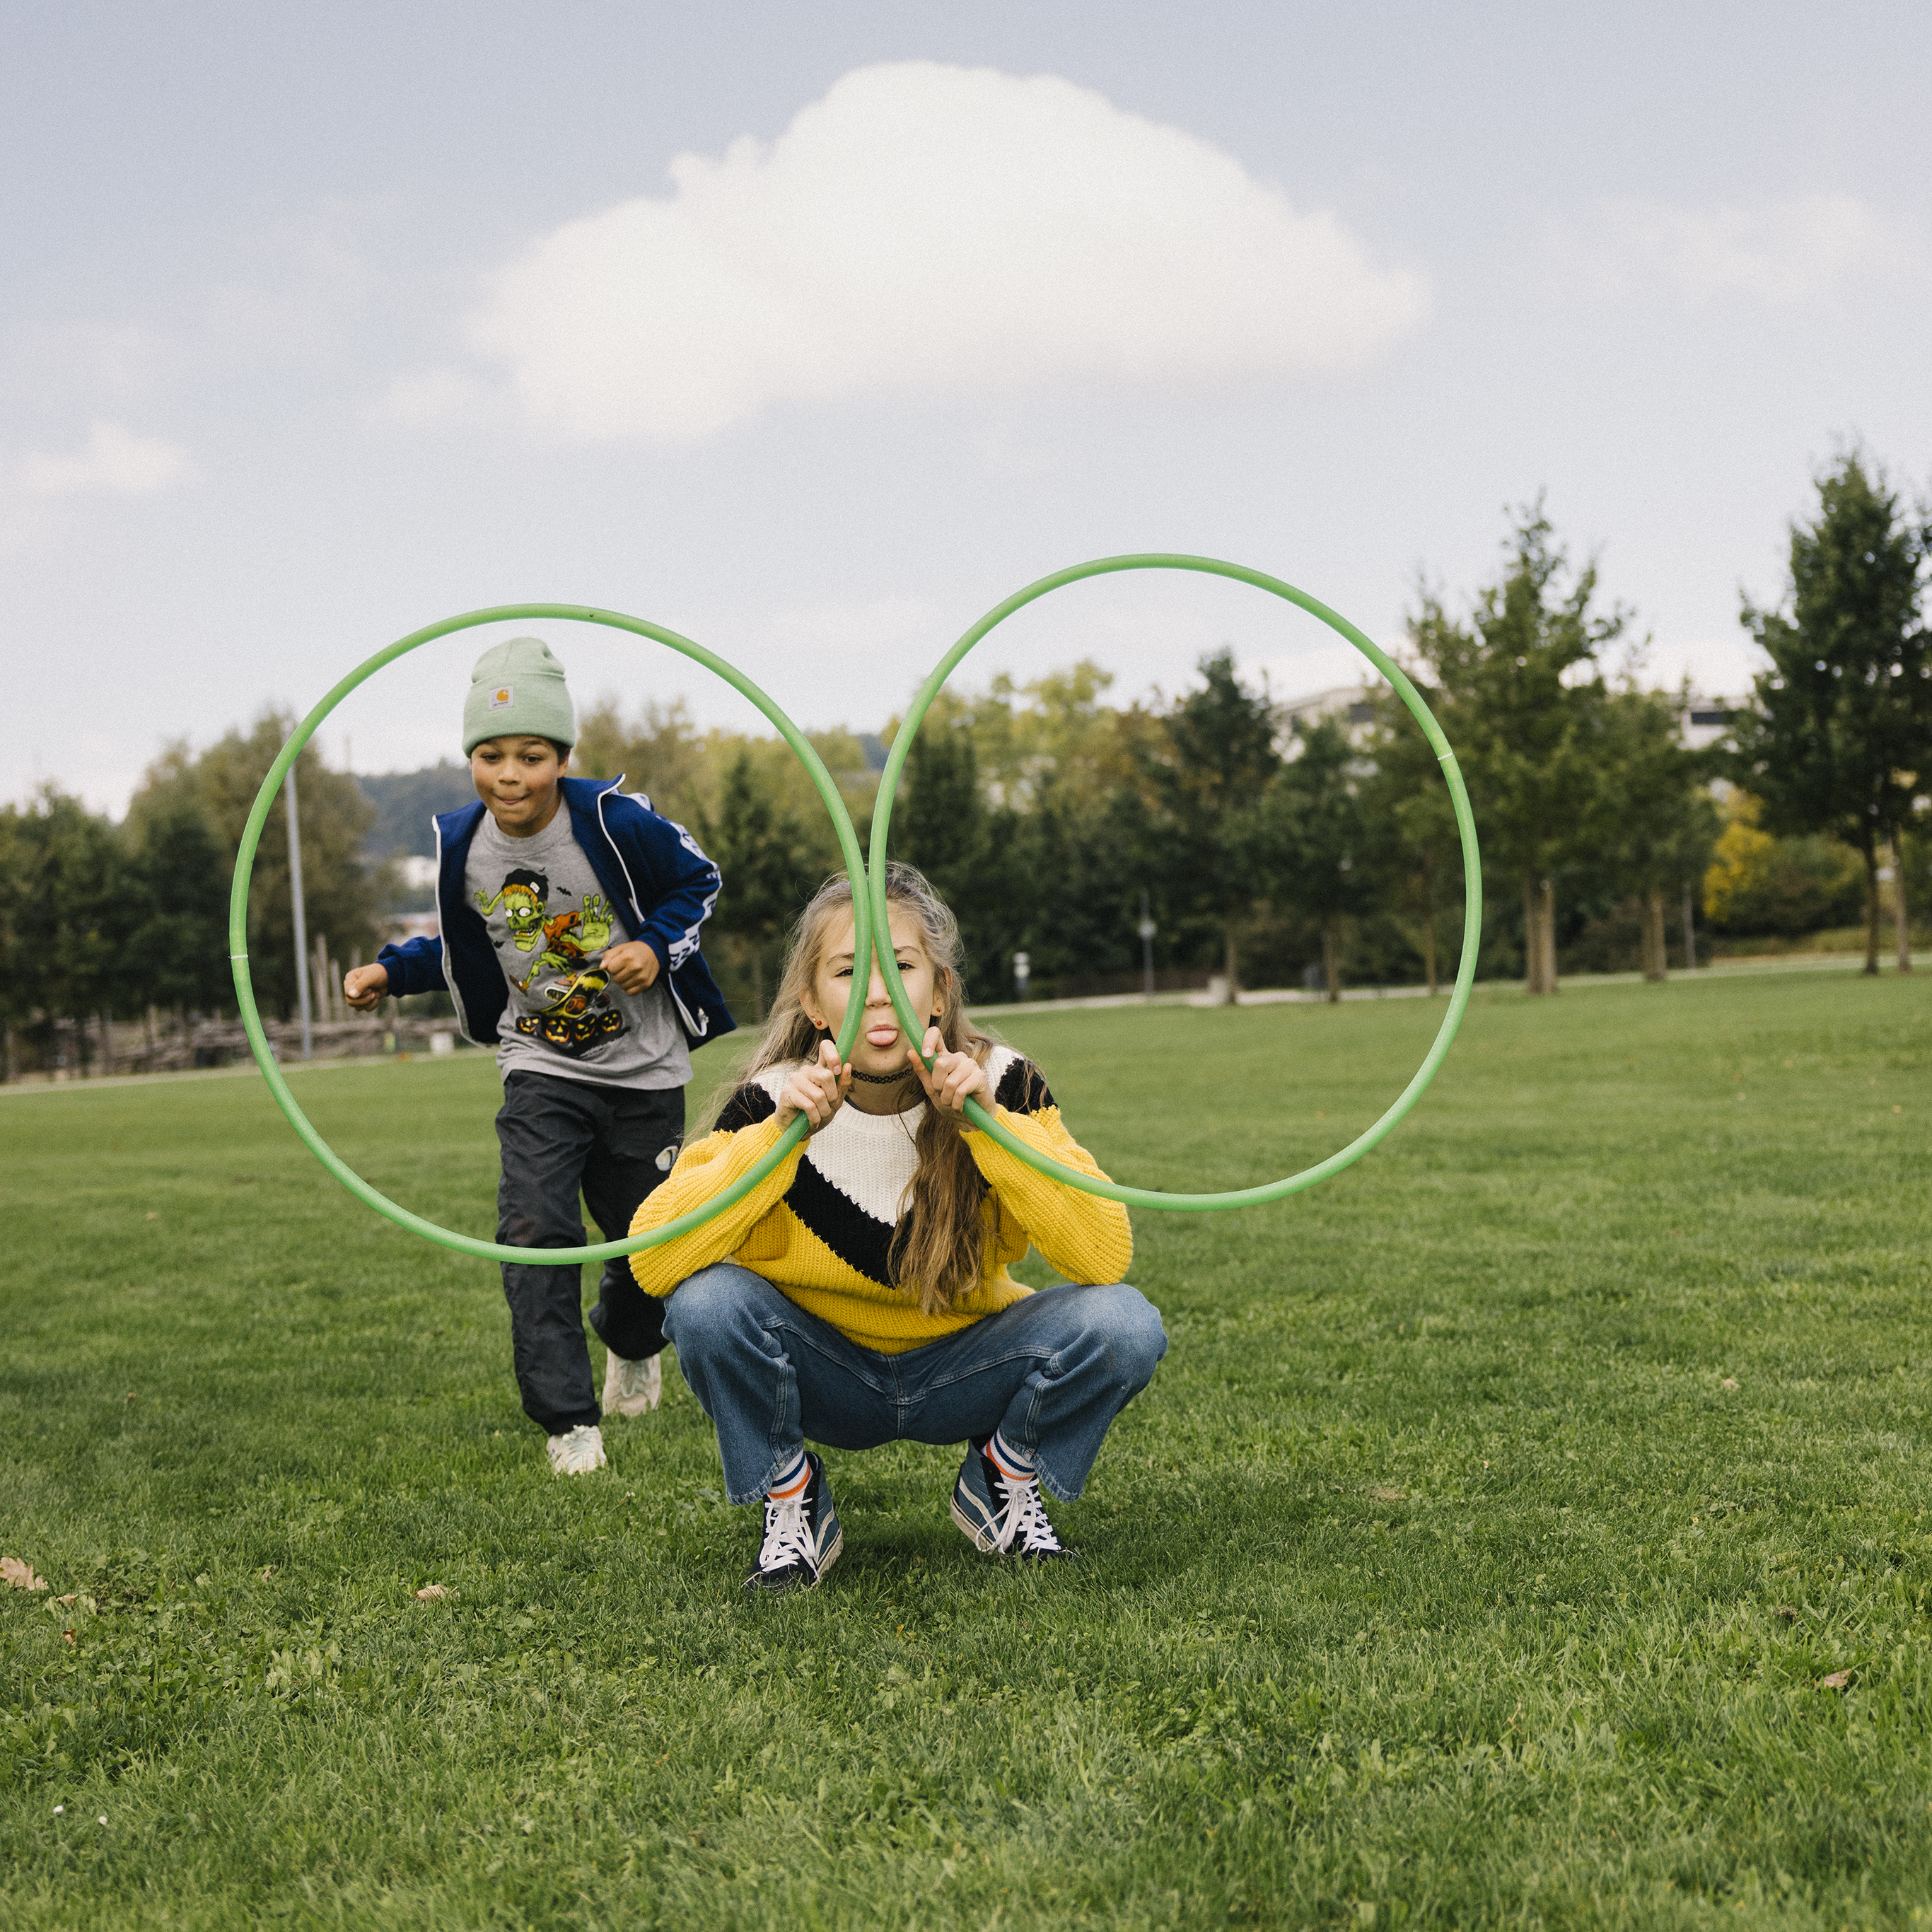 Eine Jugendliche hält zwei Hula-Hoop-Reifen wie eine Brille vor ihr Gesicht und streckt dabei die Zunge raus, während ein Jugendliche angerennt kommt, um durch einen der Ringe zu springen.